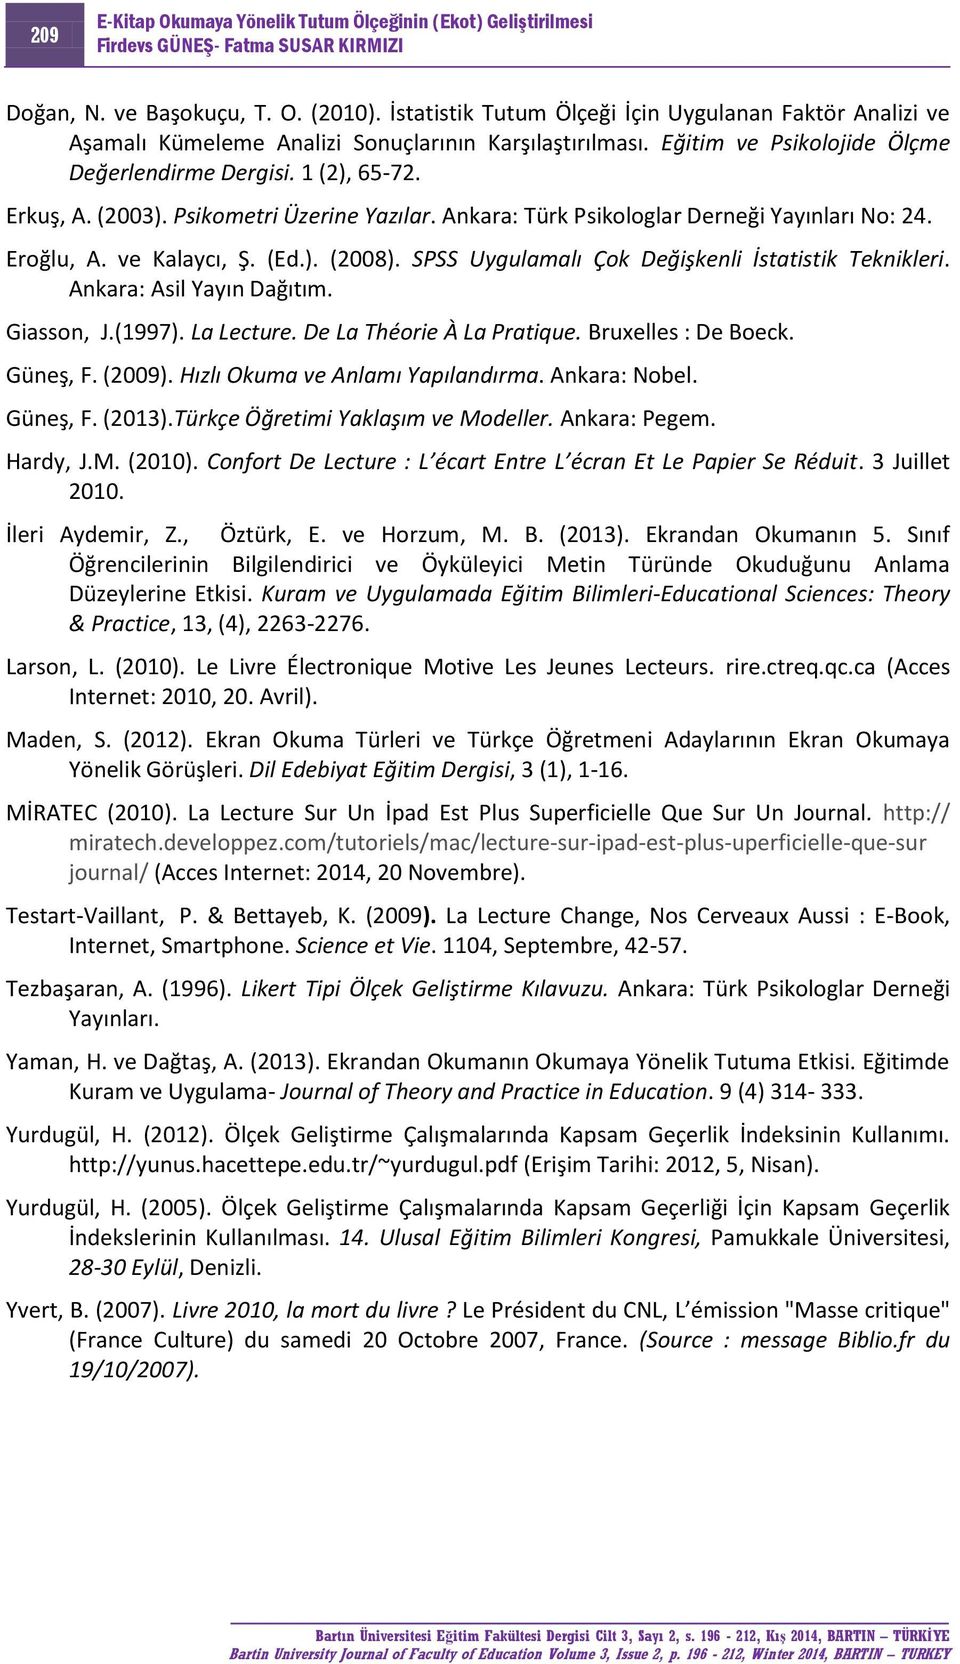 SPSS Uygulamalı Çok Değişkenli İstatistik Teknikleri. Ankara: Asil Yayın Dağıtım. Giasson, J.(1997). La Lecture. De La Théorie À La Pratique. Bruxelles : De Boeck. Güneş, F. (2009).